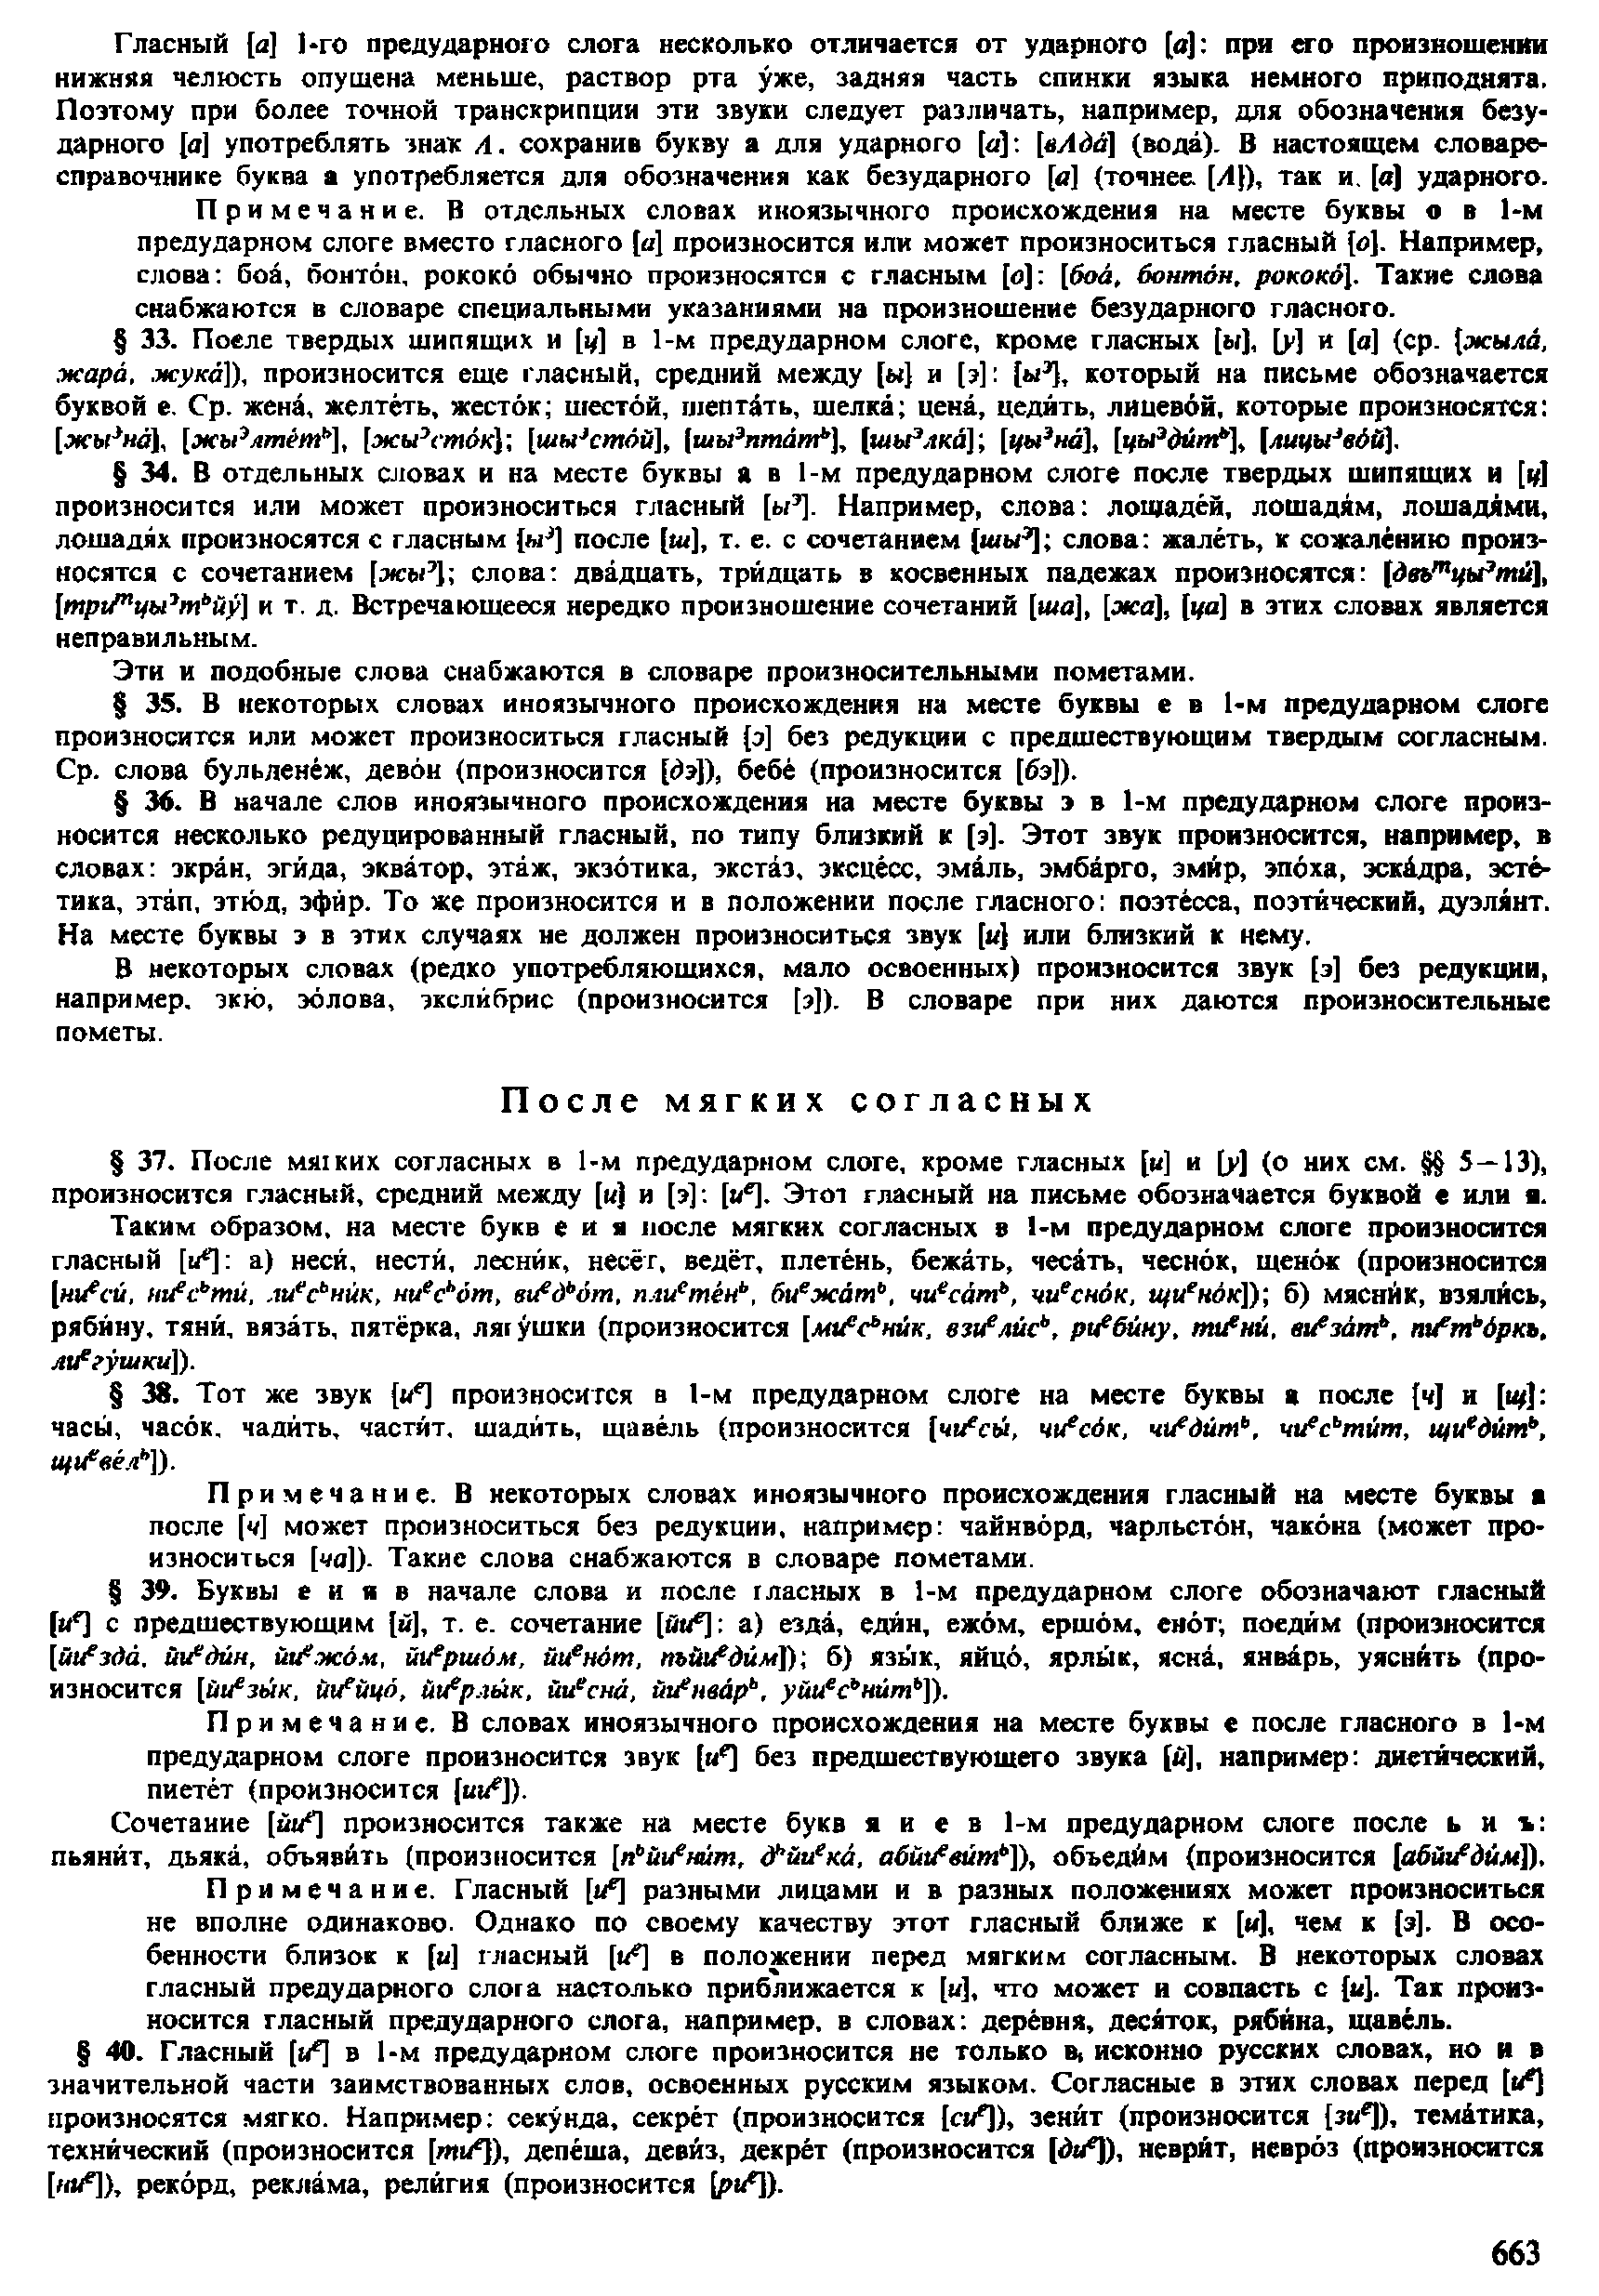 Фотокопия pdf / скан страницы 661 орфоэпического словаря под редакцией Аванесова (4 издание, 1988 год)